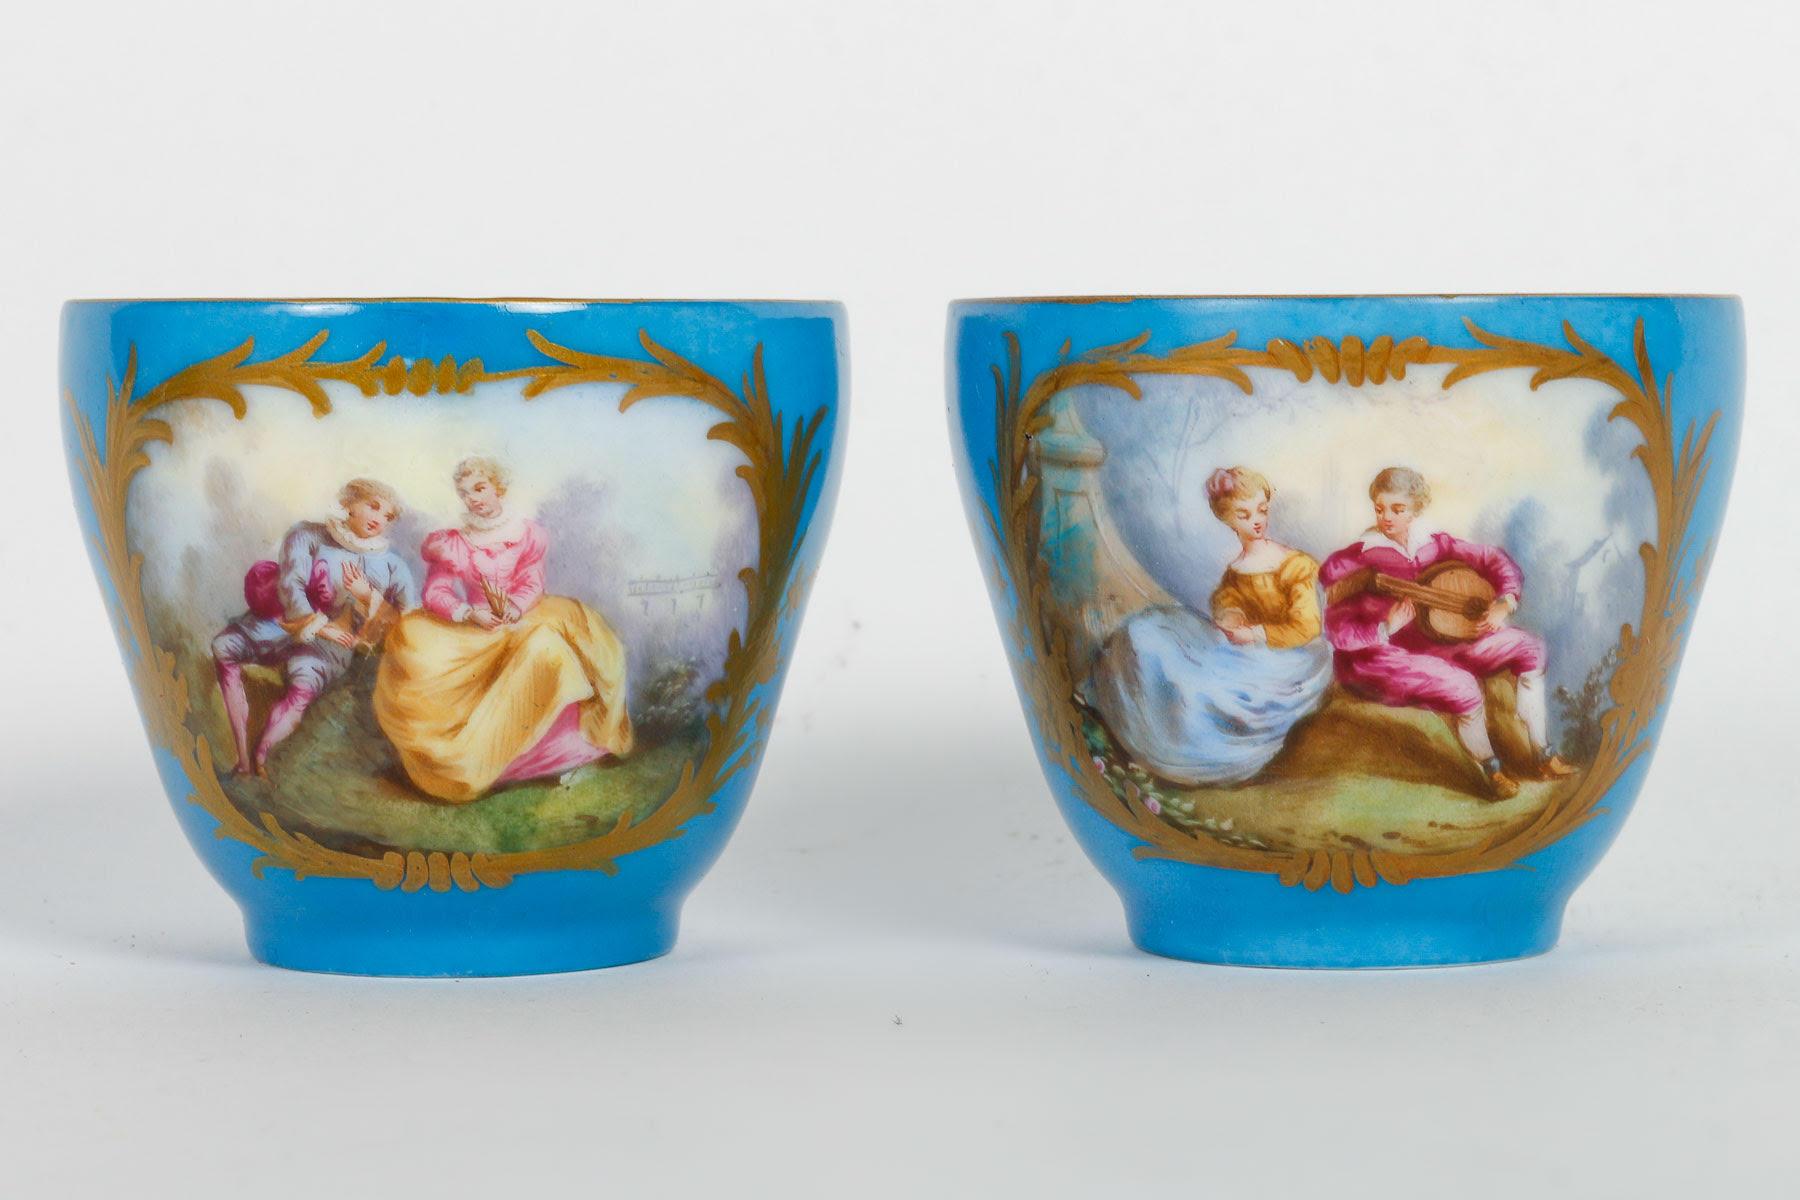 Tête-à-tête, Tea Service, Sèvres Porcelain, Napoleon III Period. For Sale 5